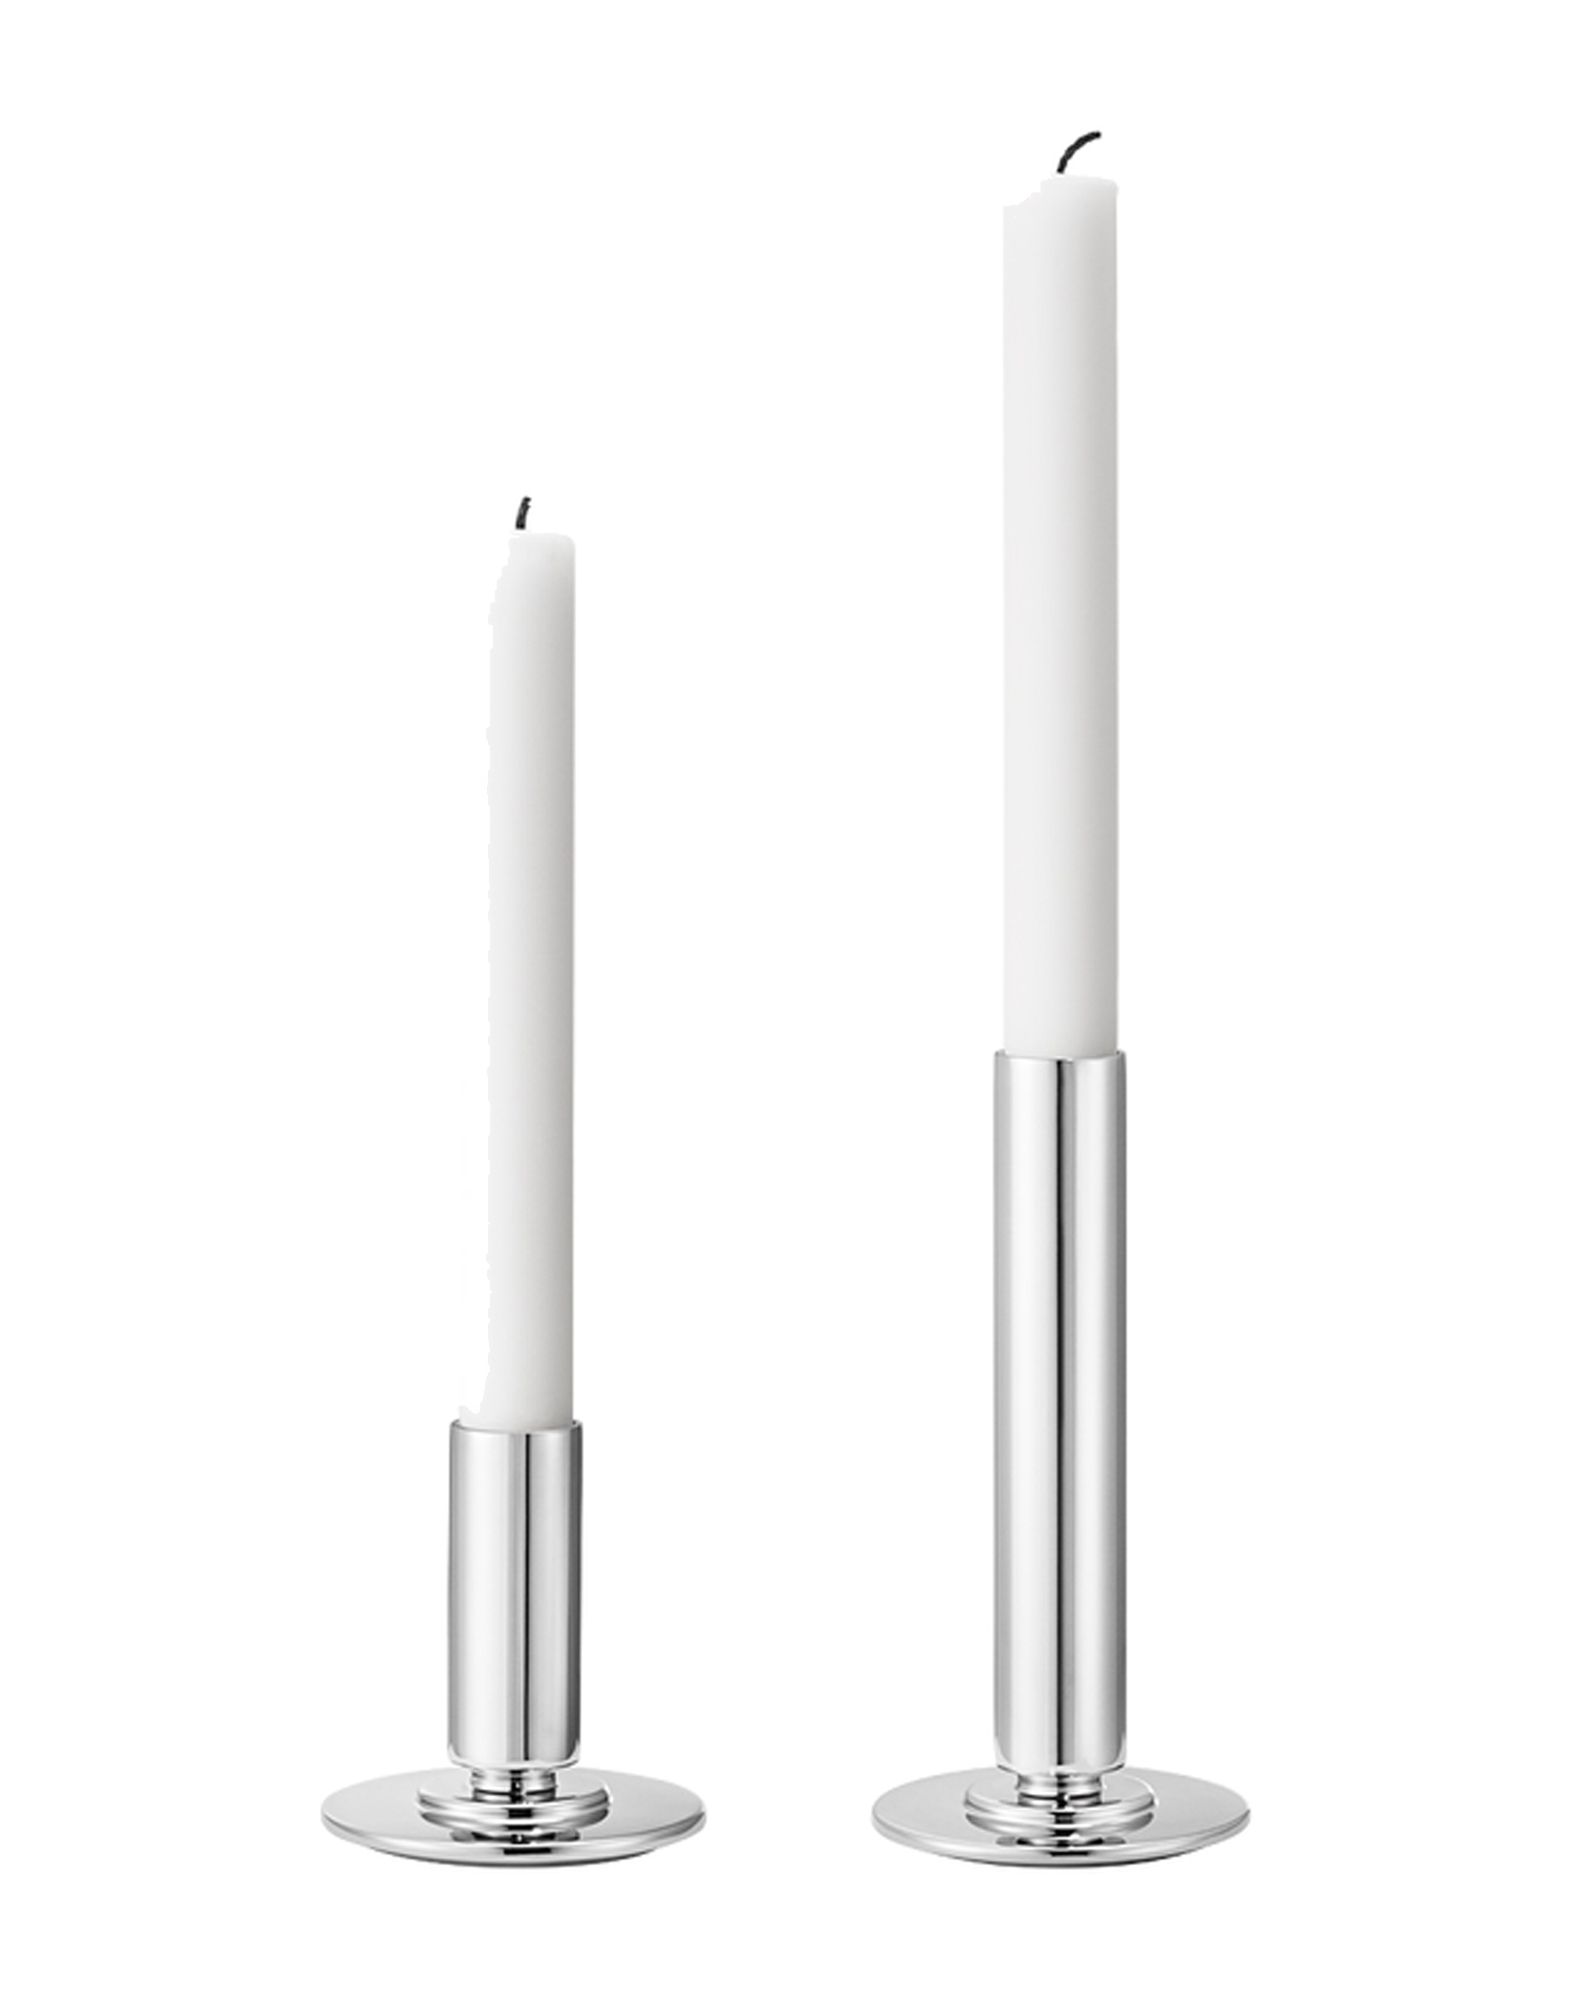 《期間限定セール開催中!》GEORG JENSEN Unisex キャンドルスタンド シルバー ステンレススチール Manhattan candleholder set